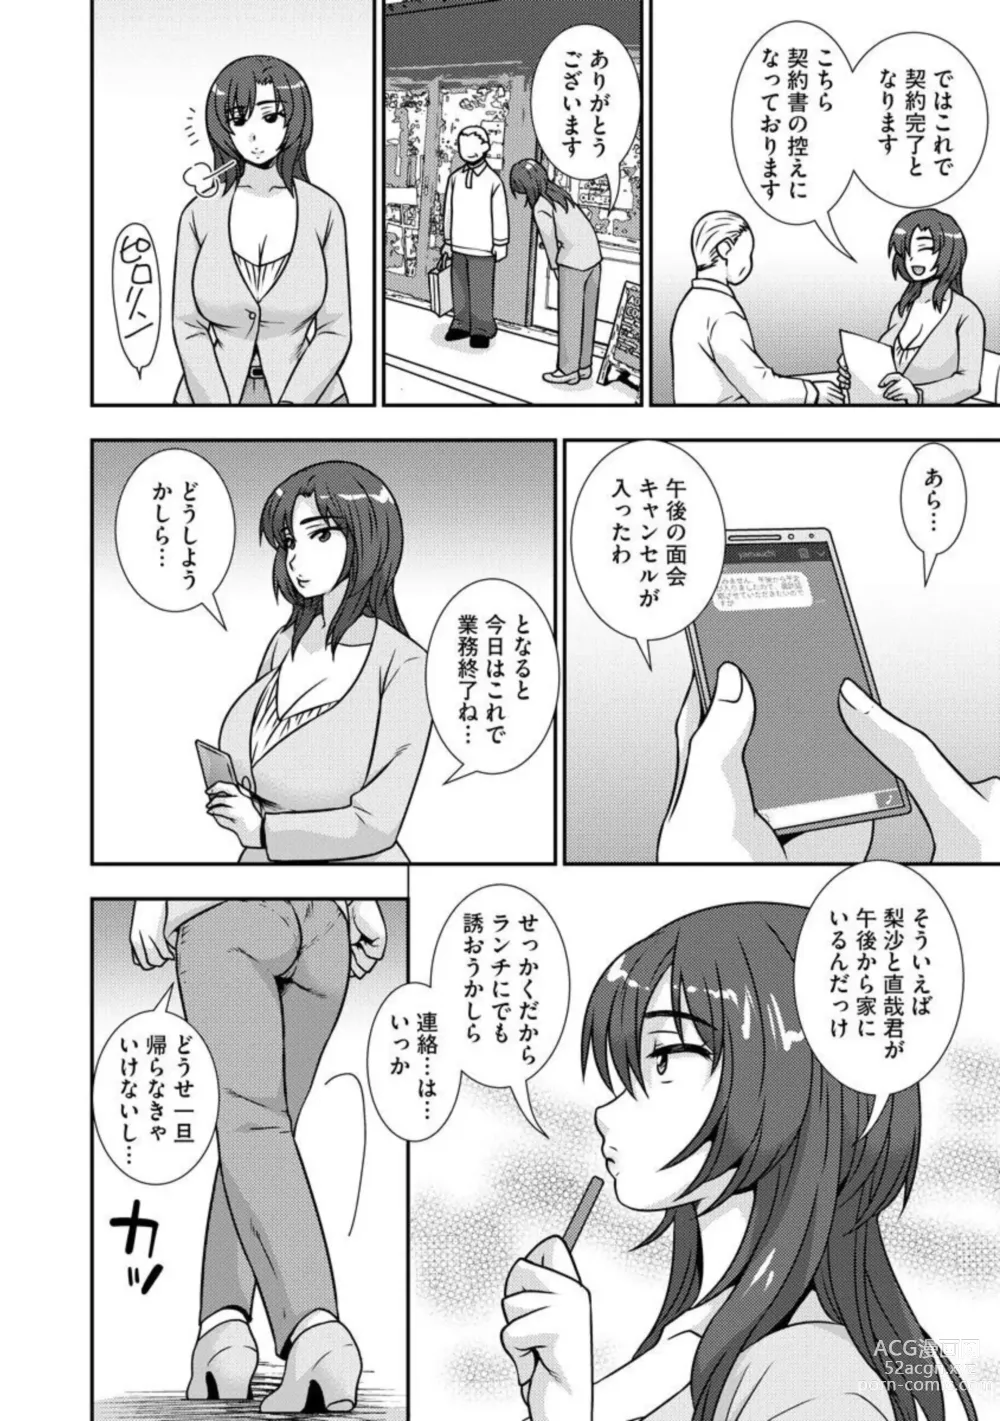 Page 9 of manga Netori Haha Musume no Kareshi no Are ga Wasurerarenakute 1